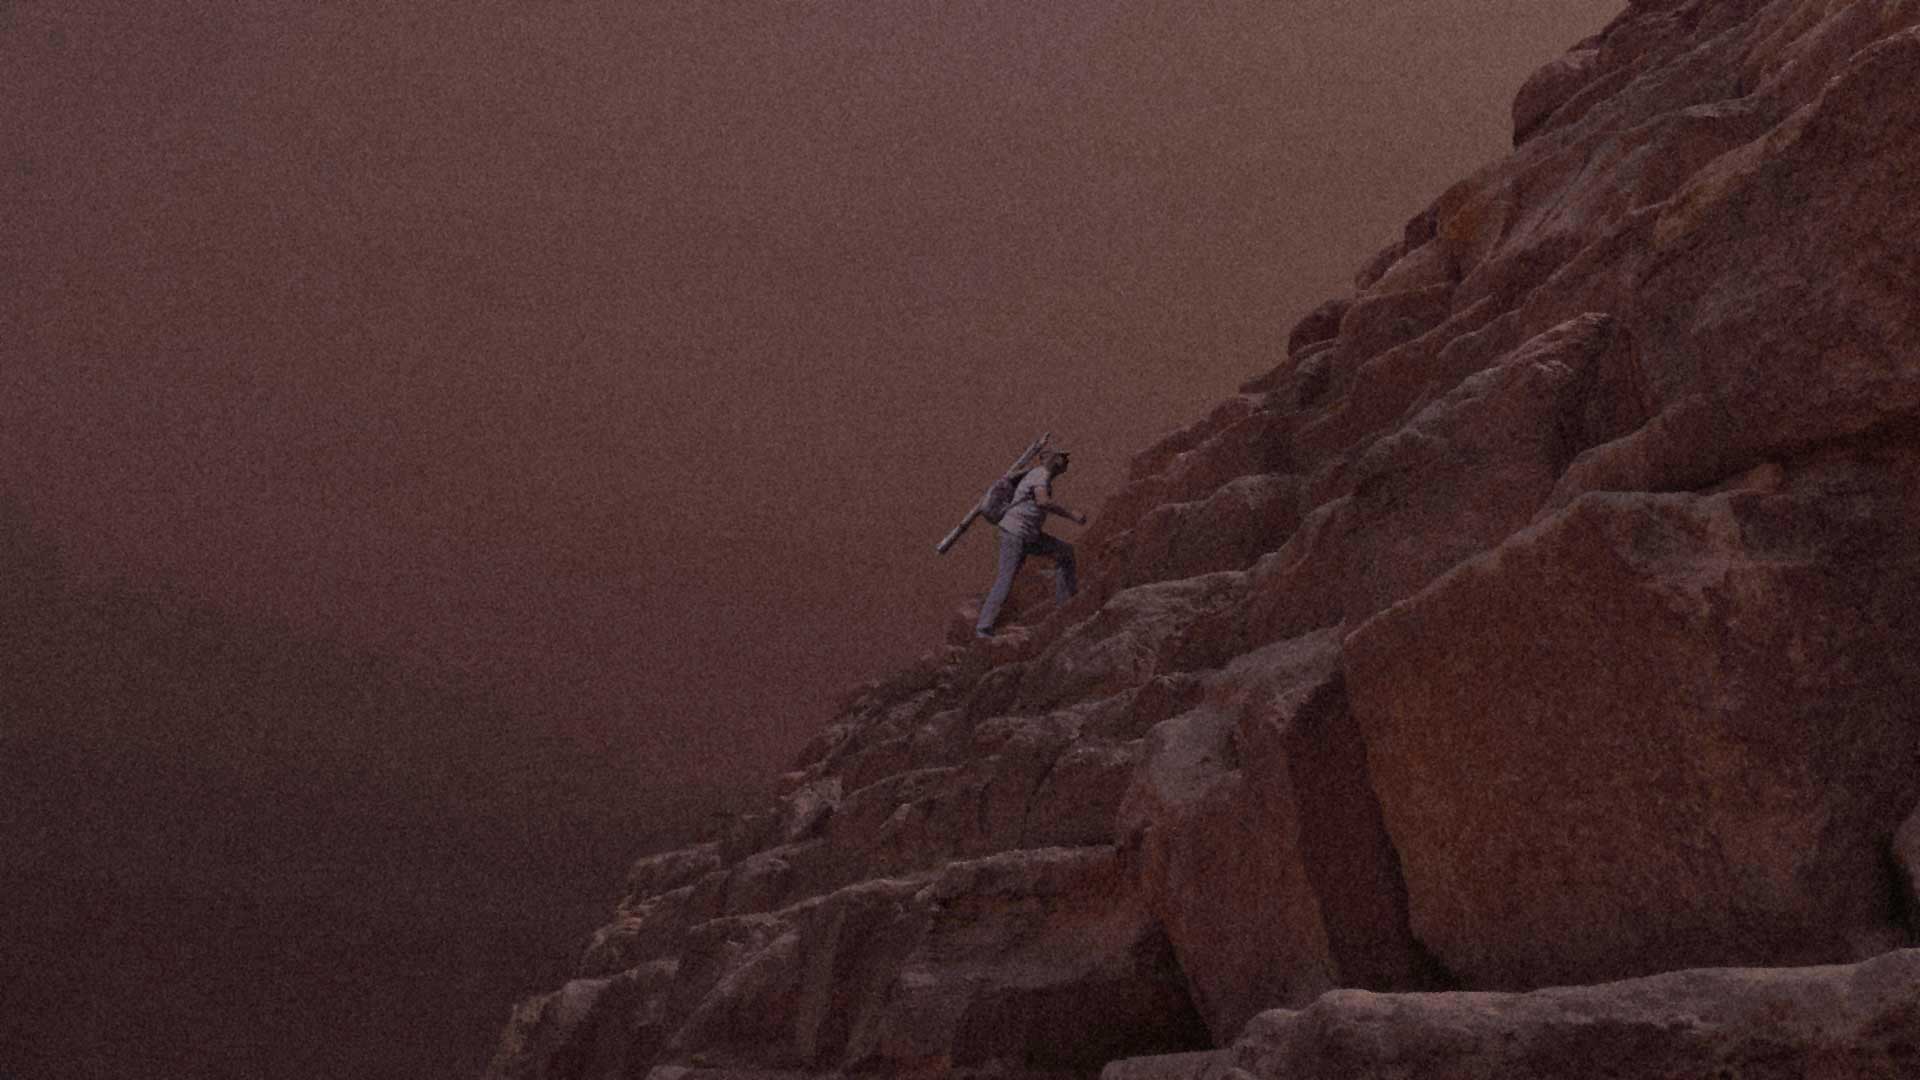 Auf dem Weg zur Spitze der Cheops-Pyramide (1988)